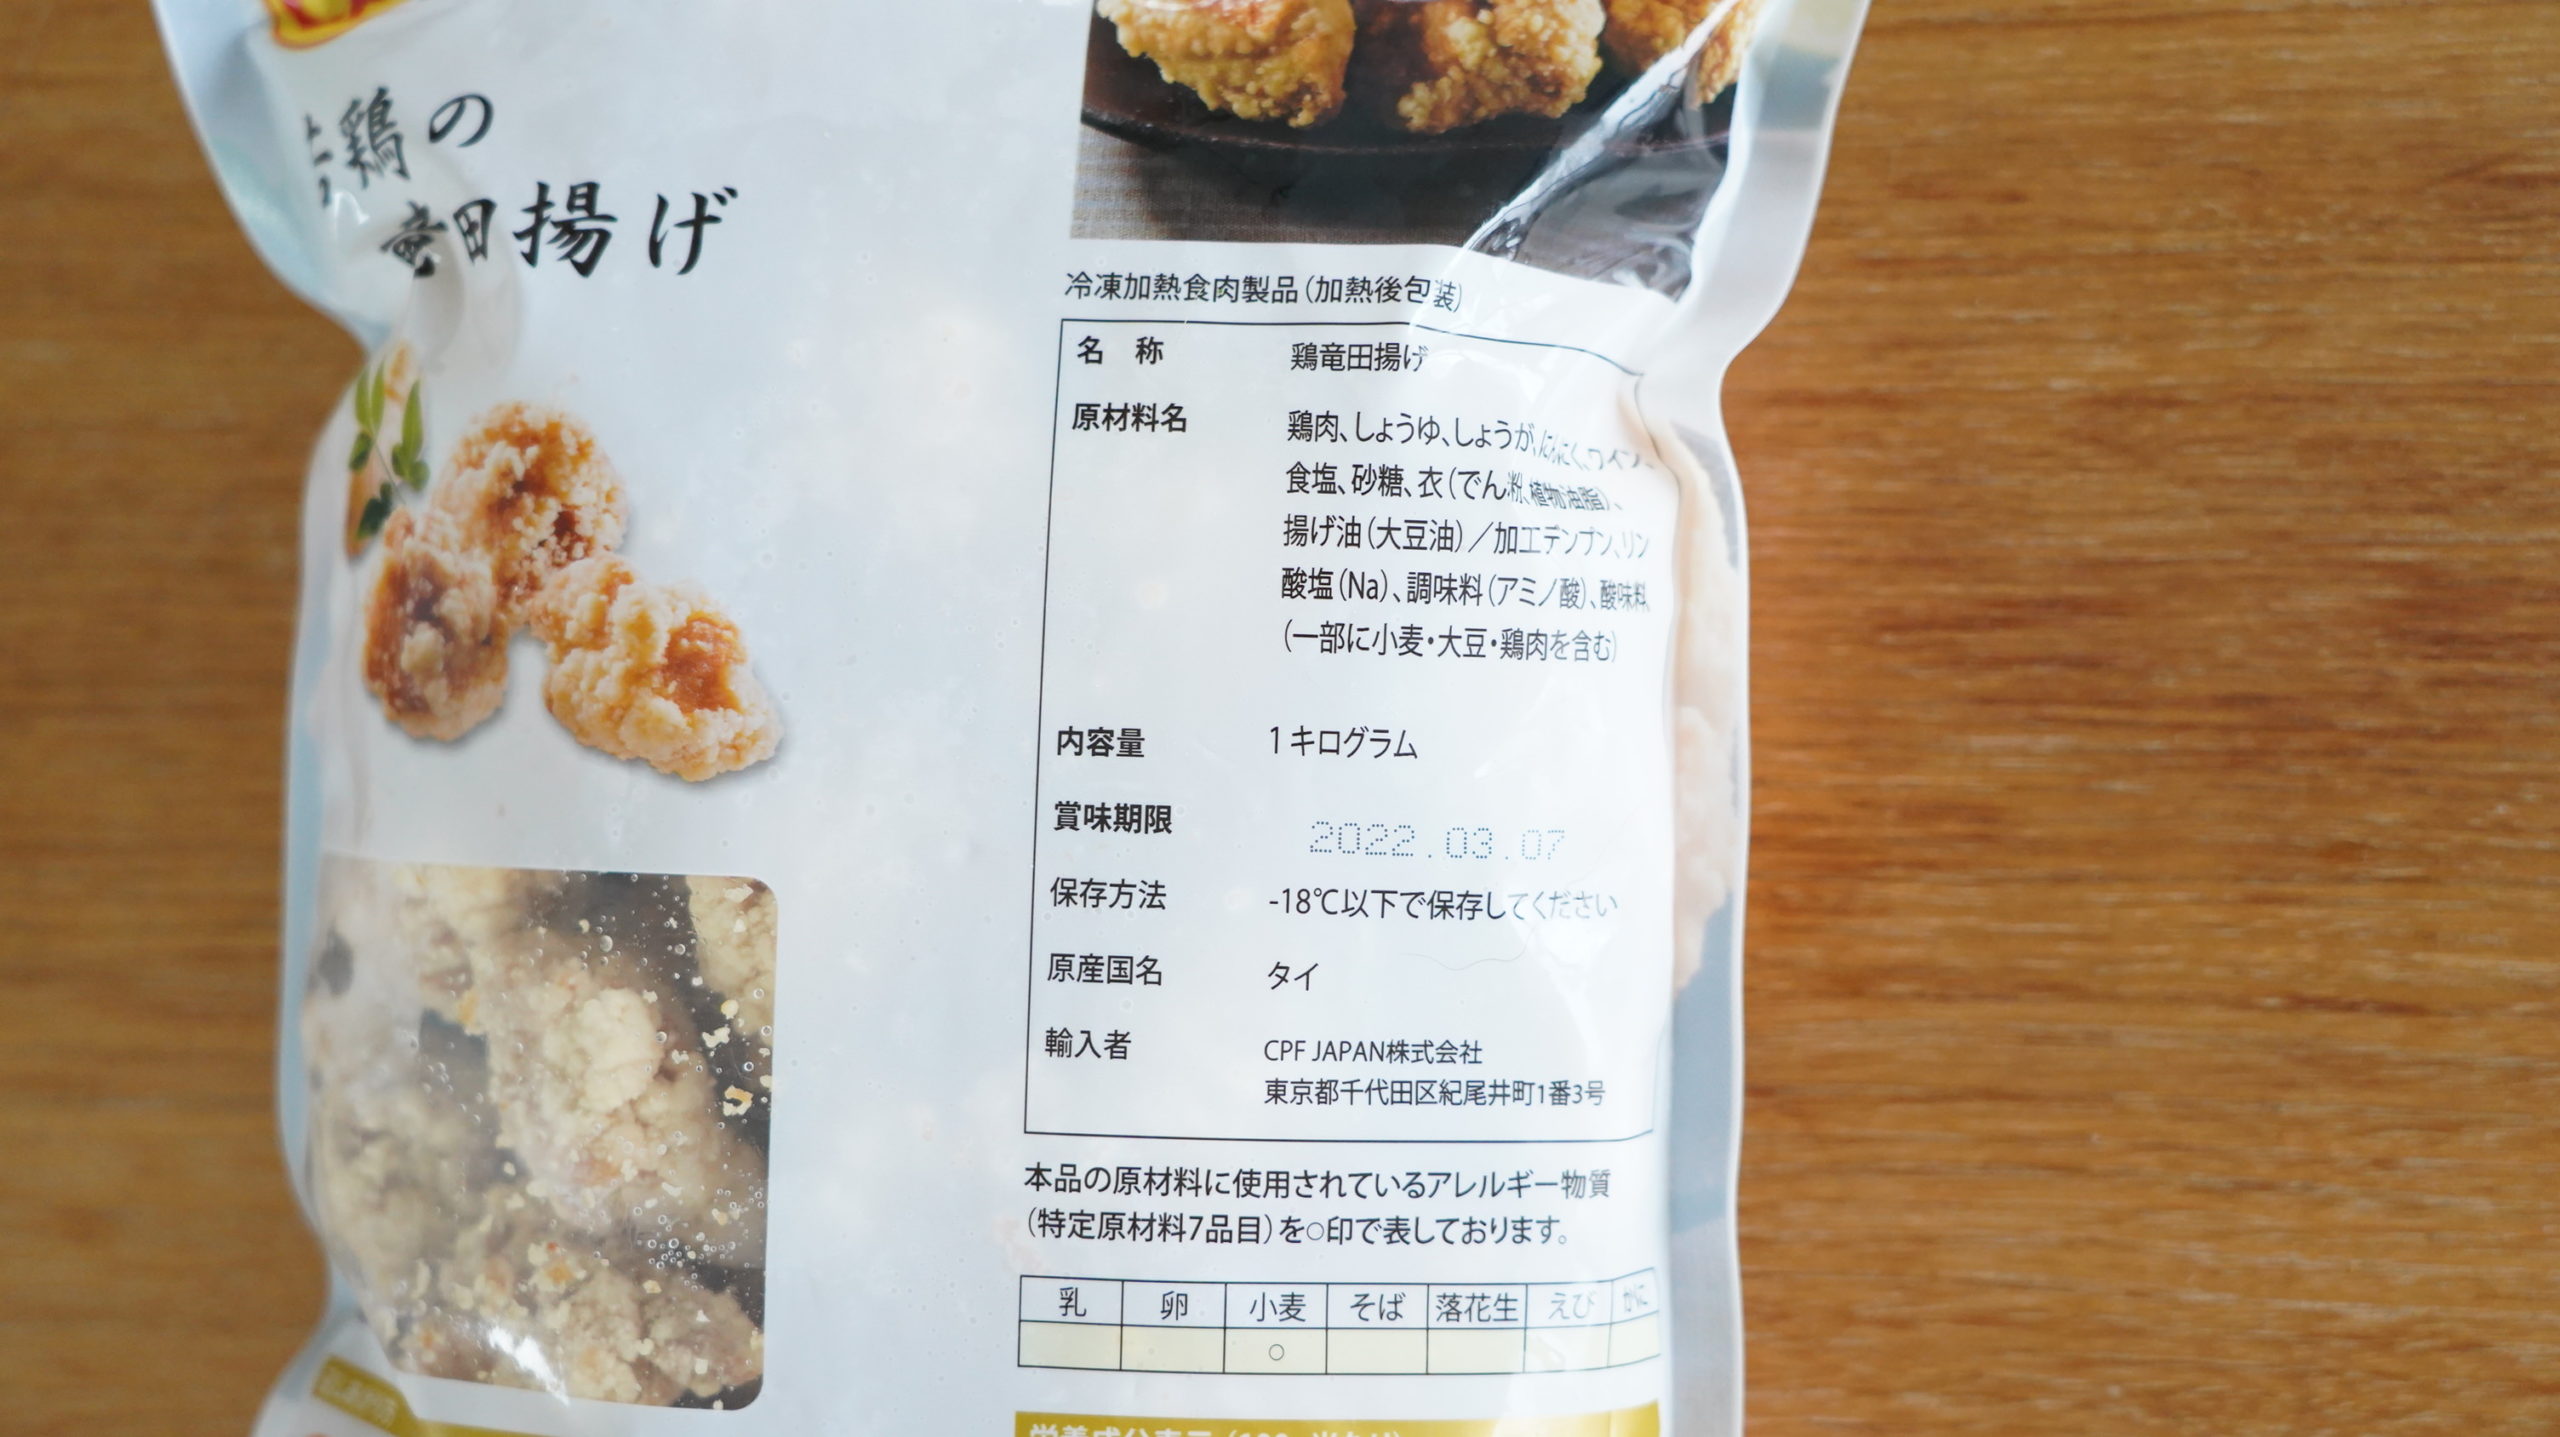 コストコの冷凍食品「CP 若鶏の竜田揚げ」のパッケージ裏面の拡大写真